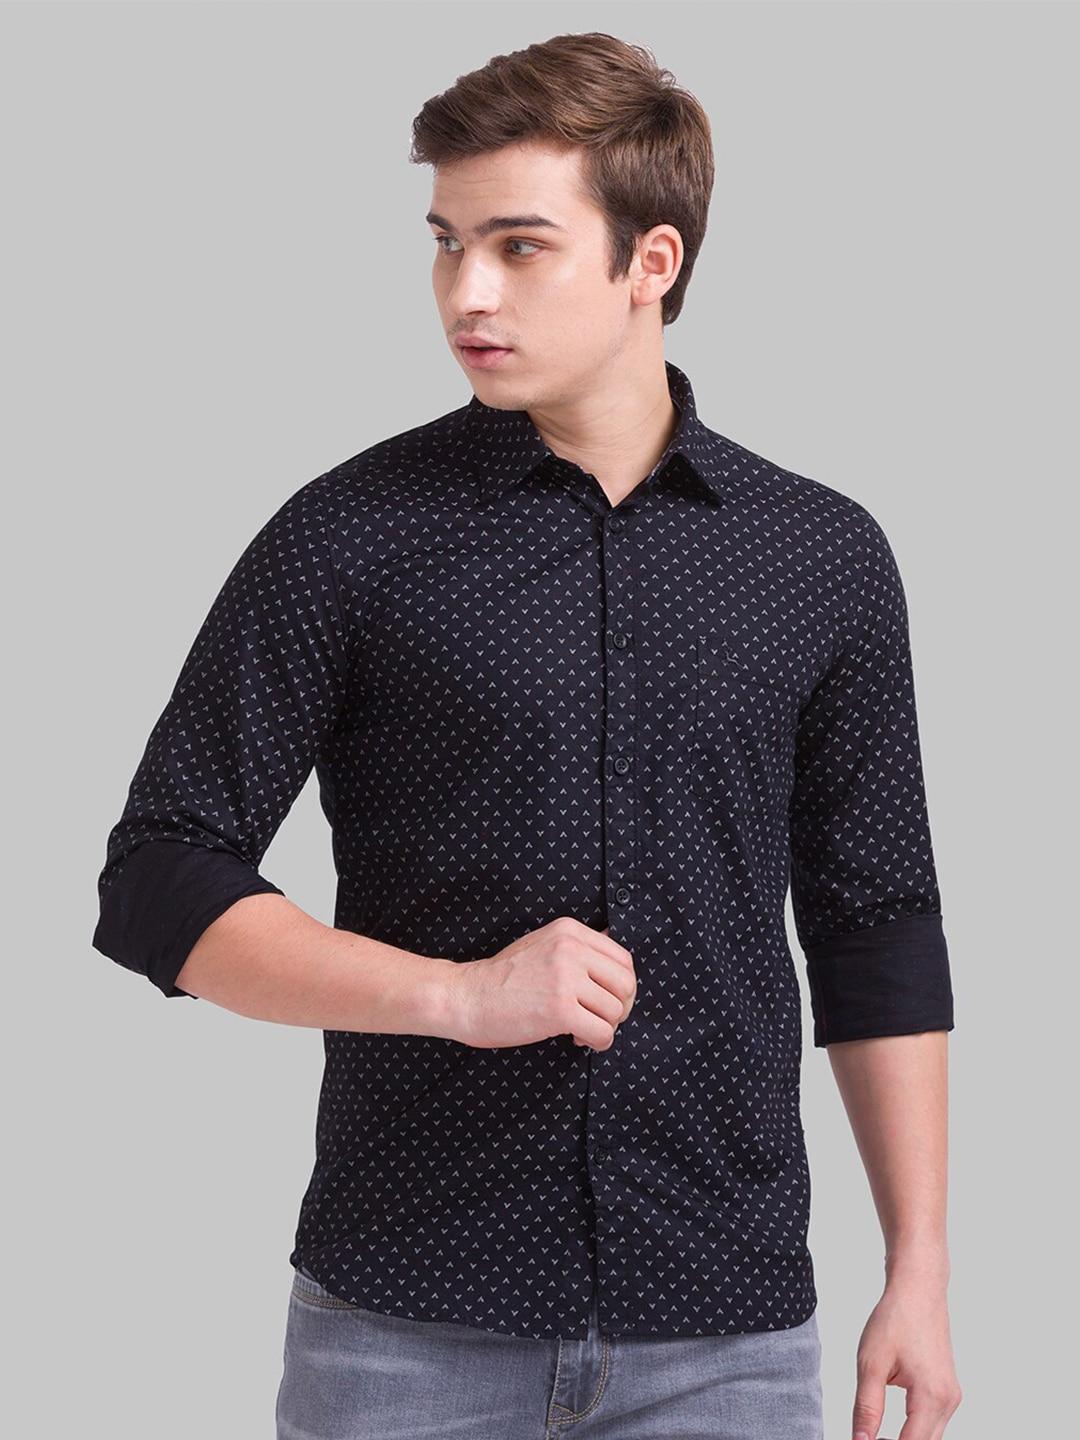 parx-men-black-slim-fit-printed-casual-shirt